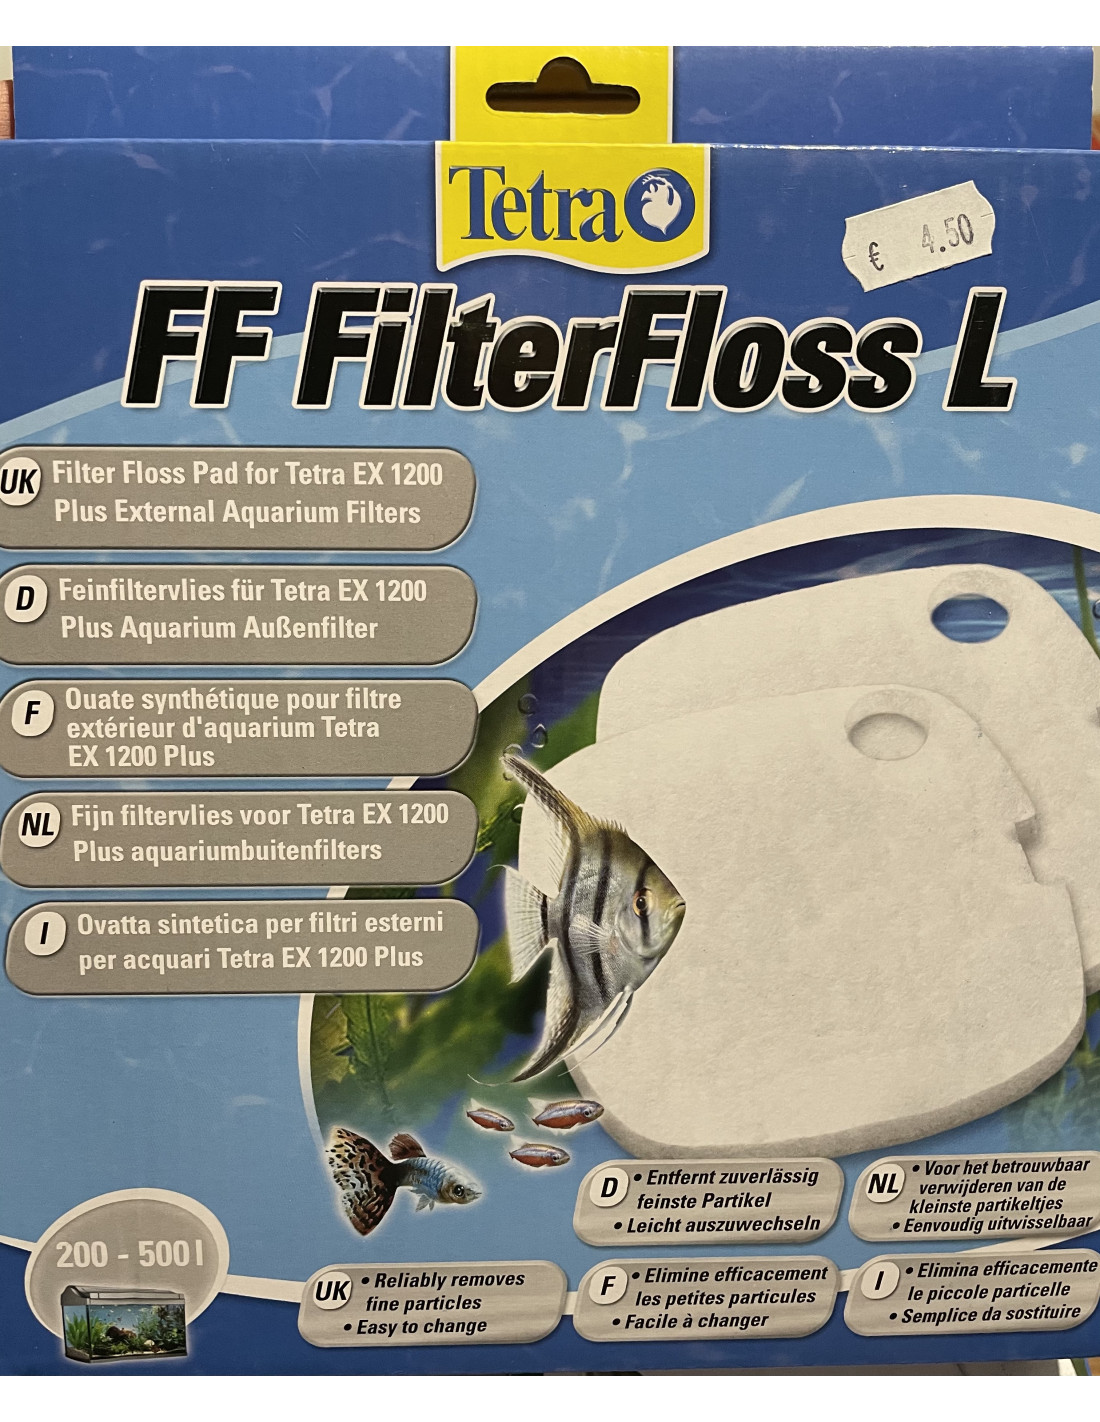 FF filter floss L